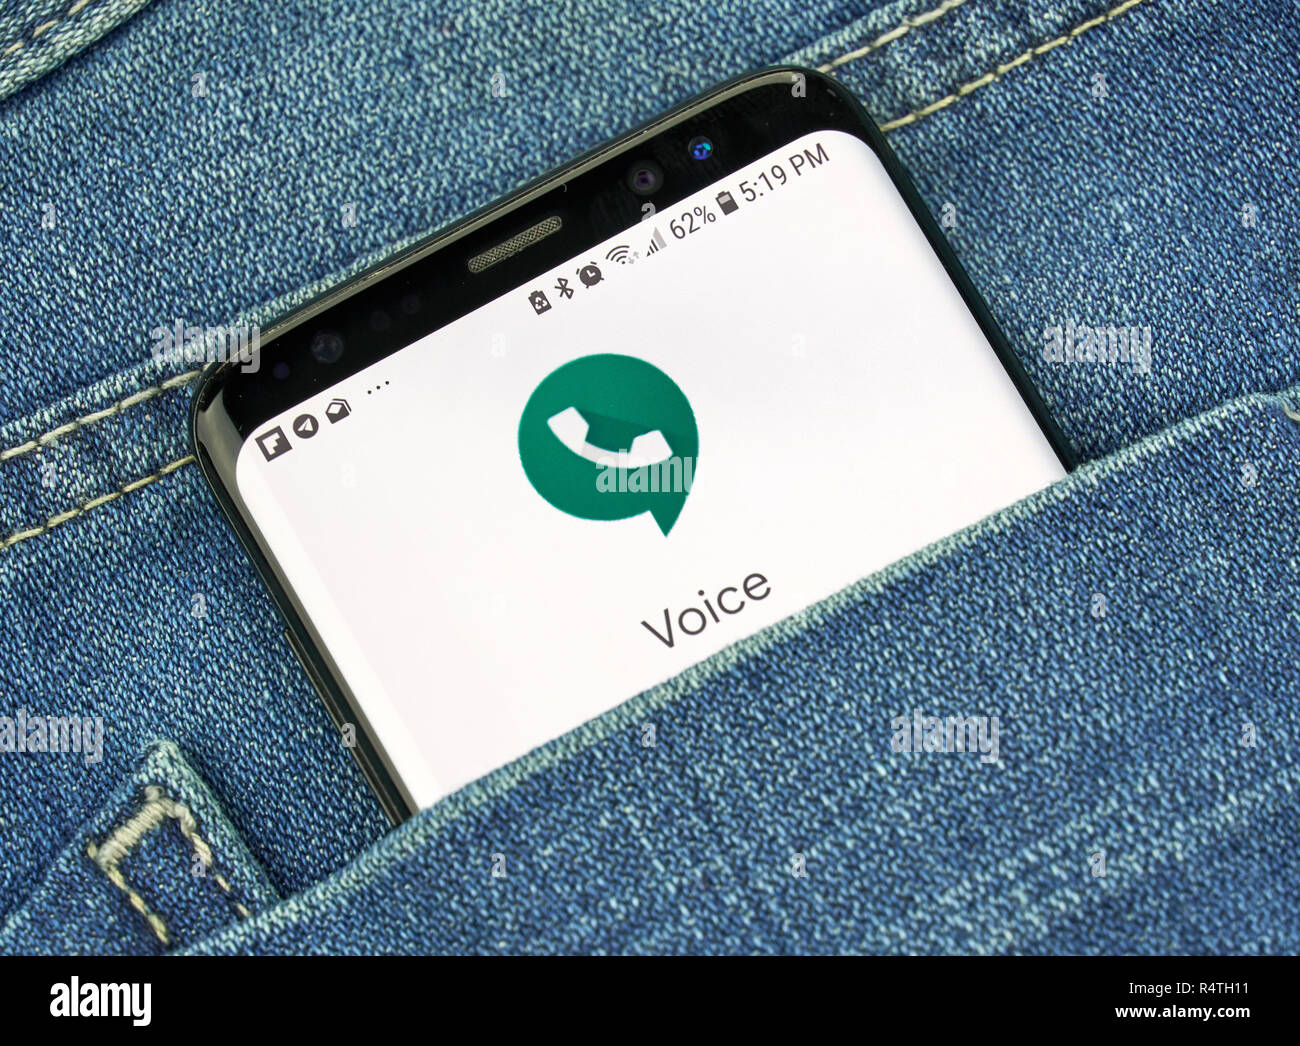 MONTREAL, KANADA - 4. OKTOBER 2018: die Google Voice app auf S8-Bildschirm. Google Voice ist ein Voice-over-IP-Service. Google ist ein amerikanisches Unternehmen, das w Stockfoto